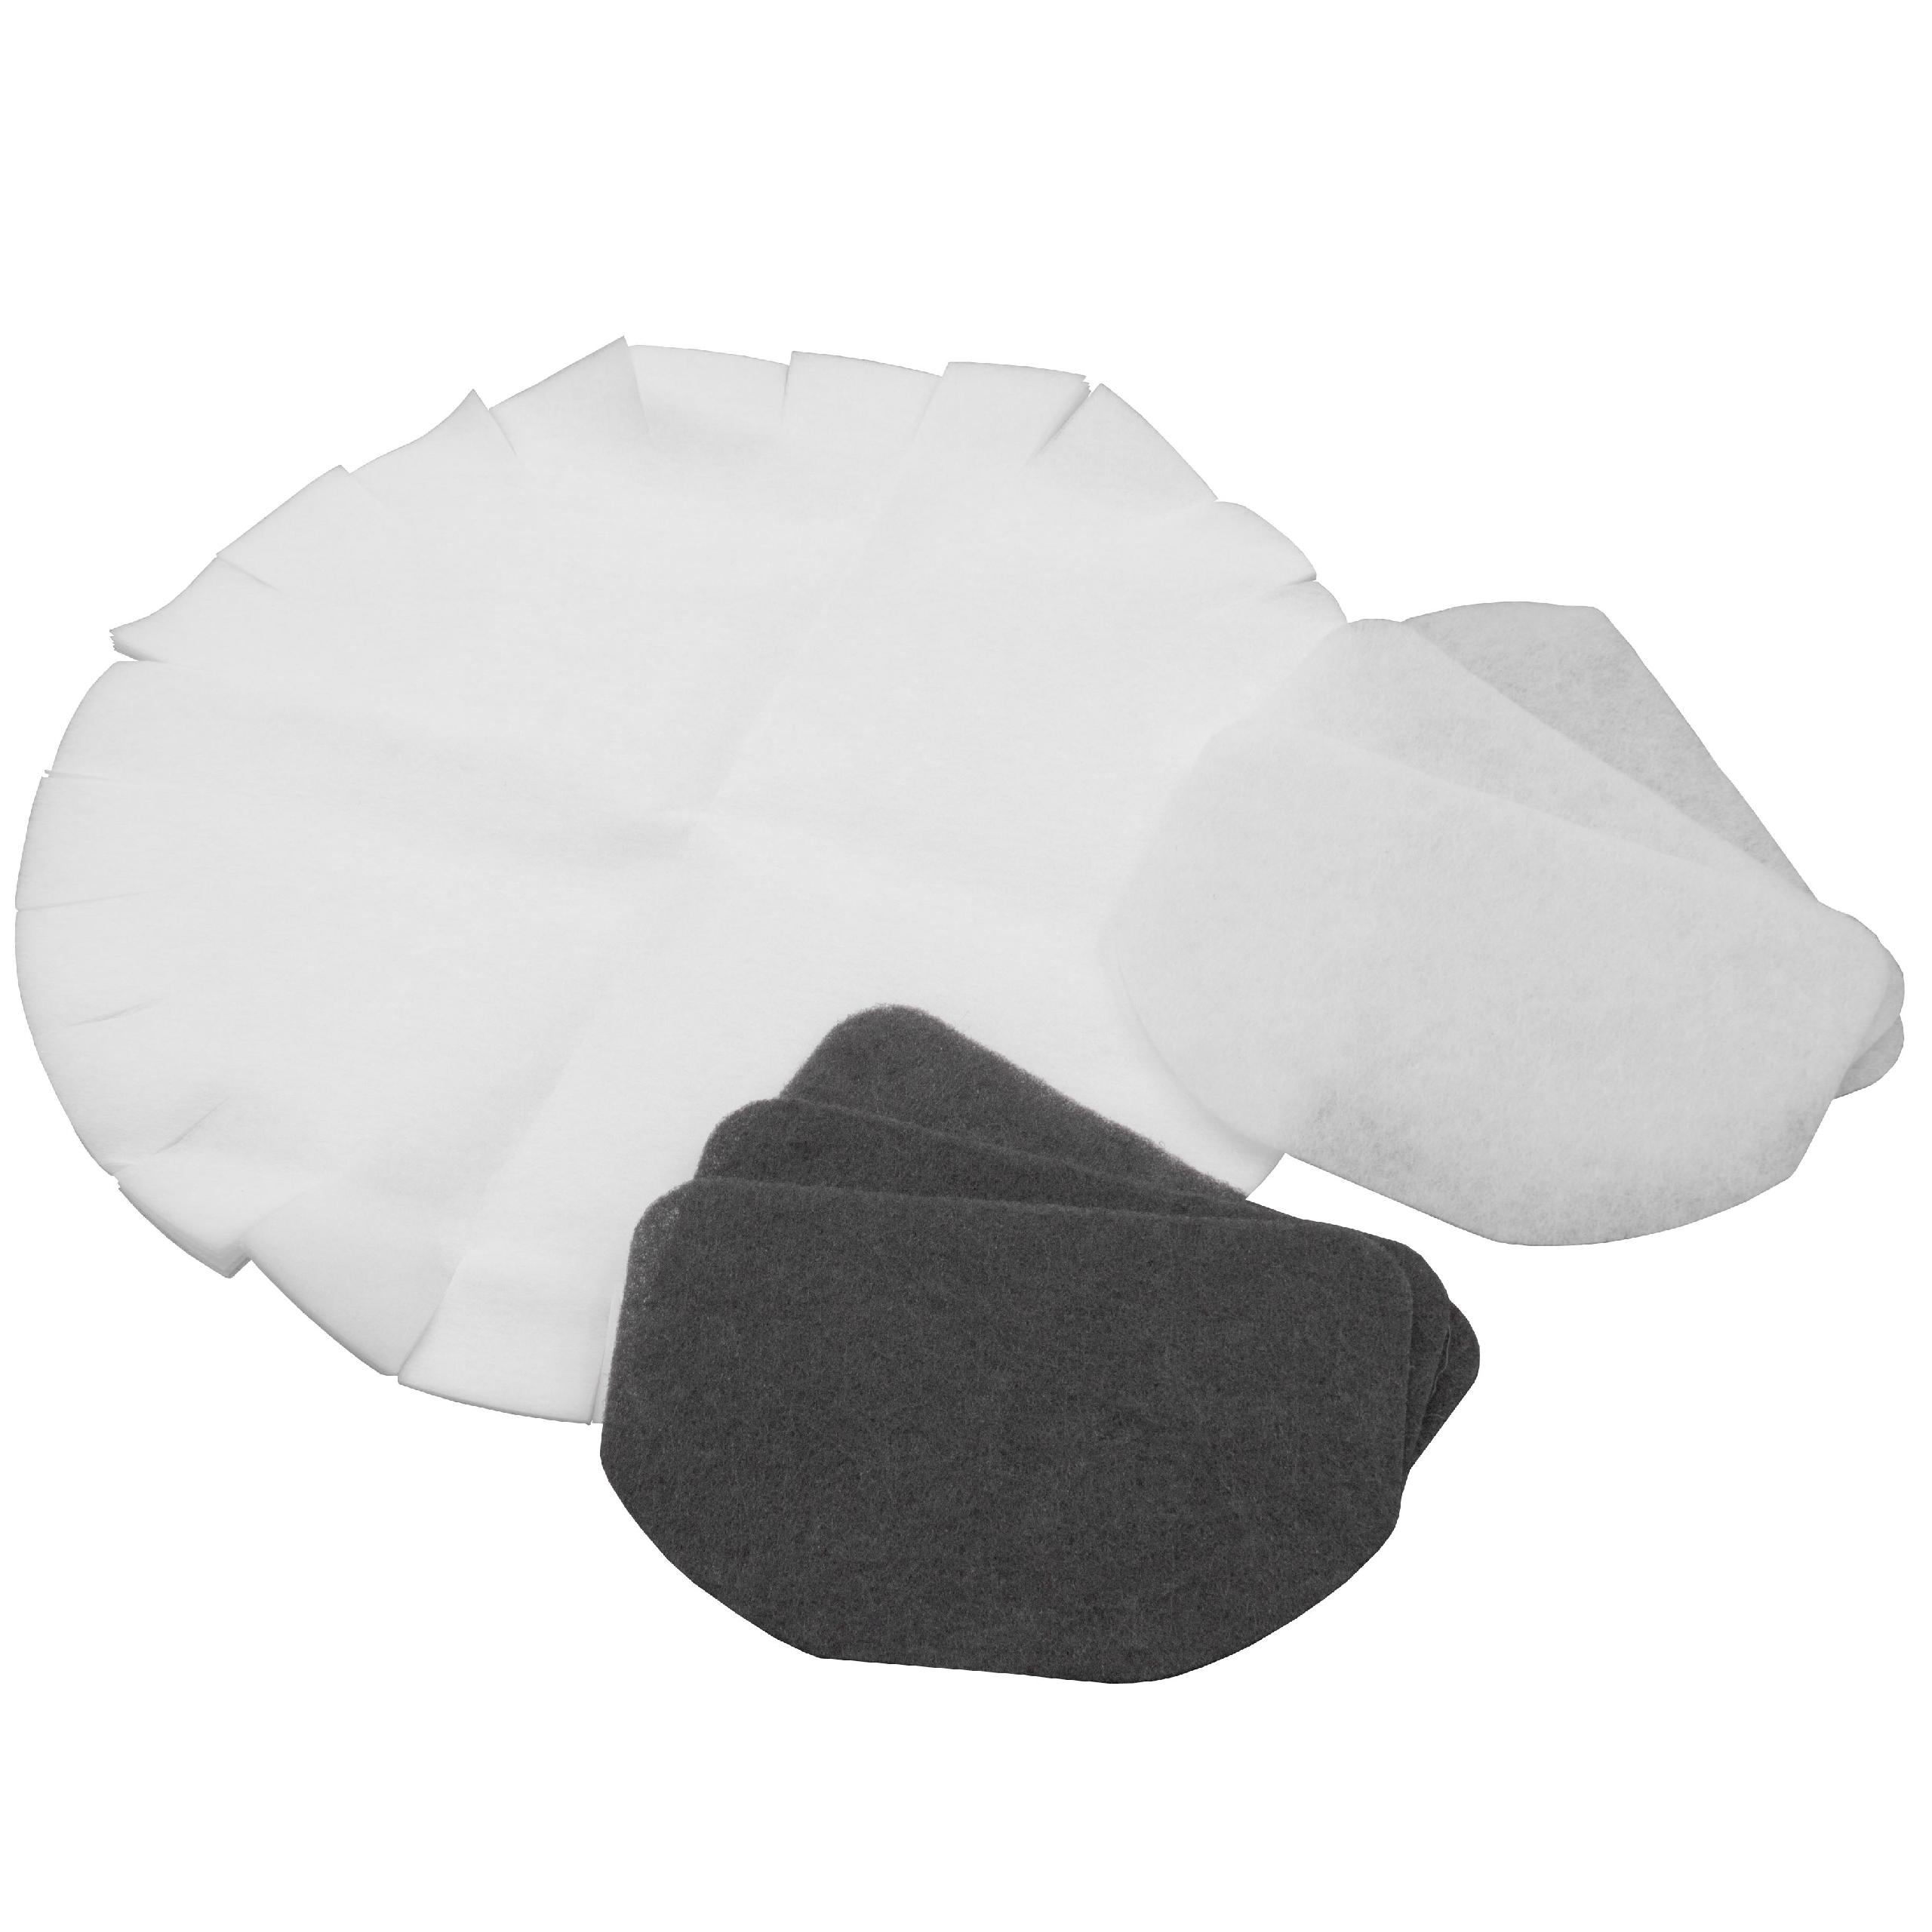 Filtro di ricambio (set da 12) - in carta ai carboni attivi anti-grasso nero, bianco per friggitrice come